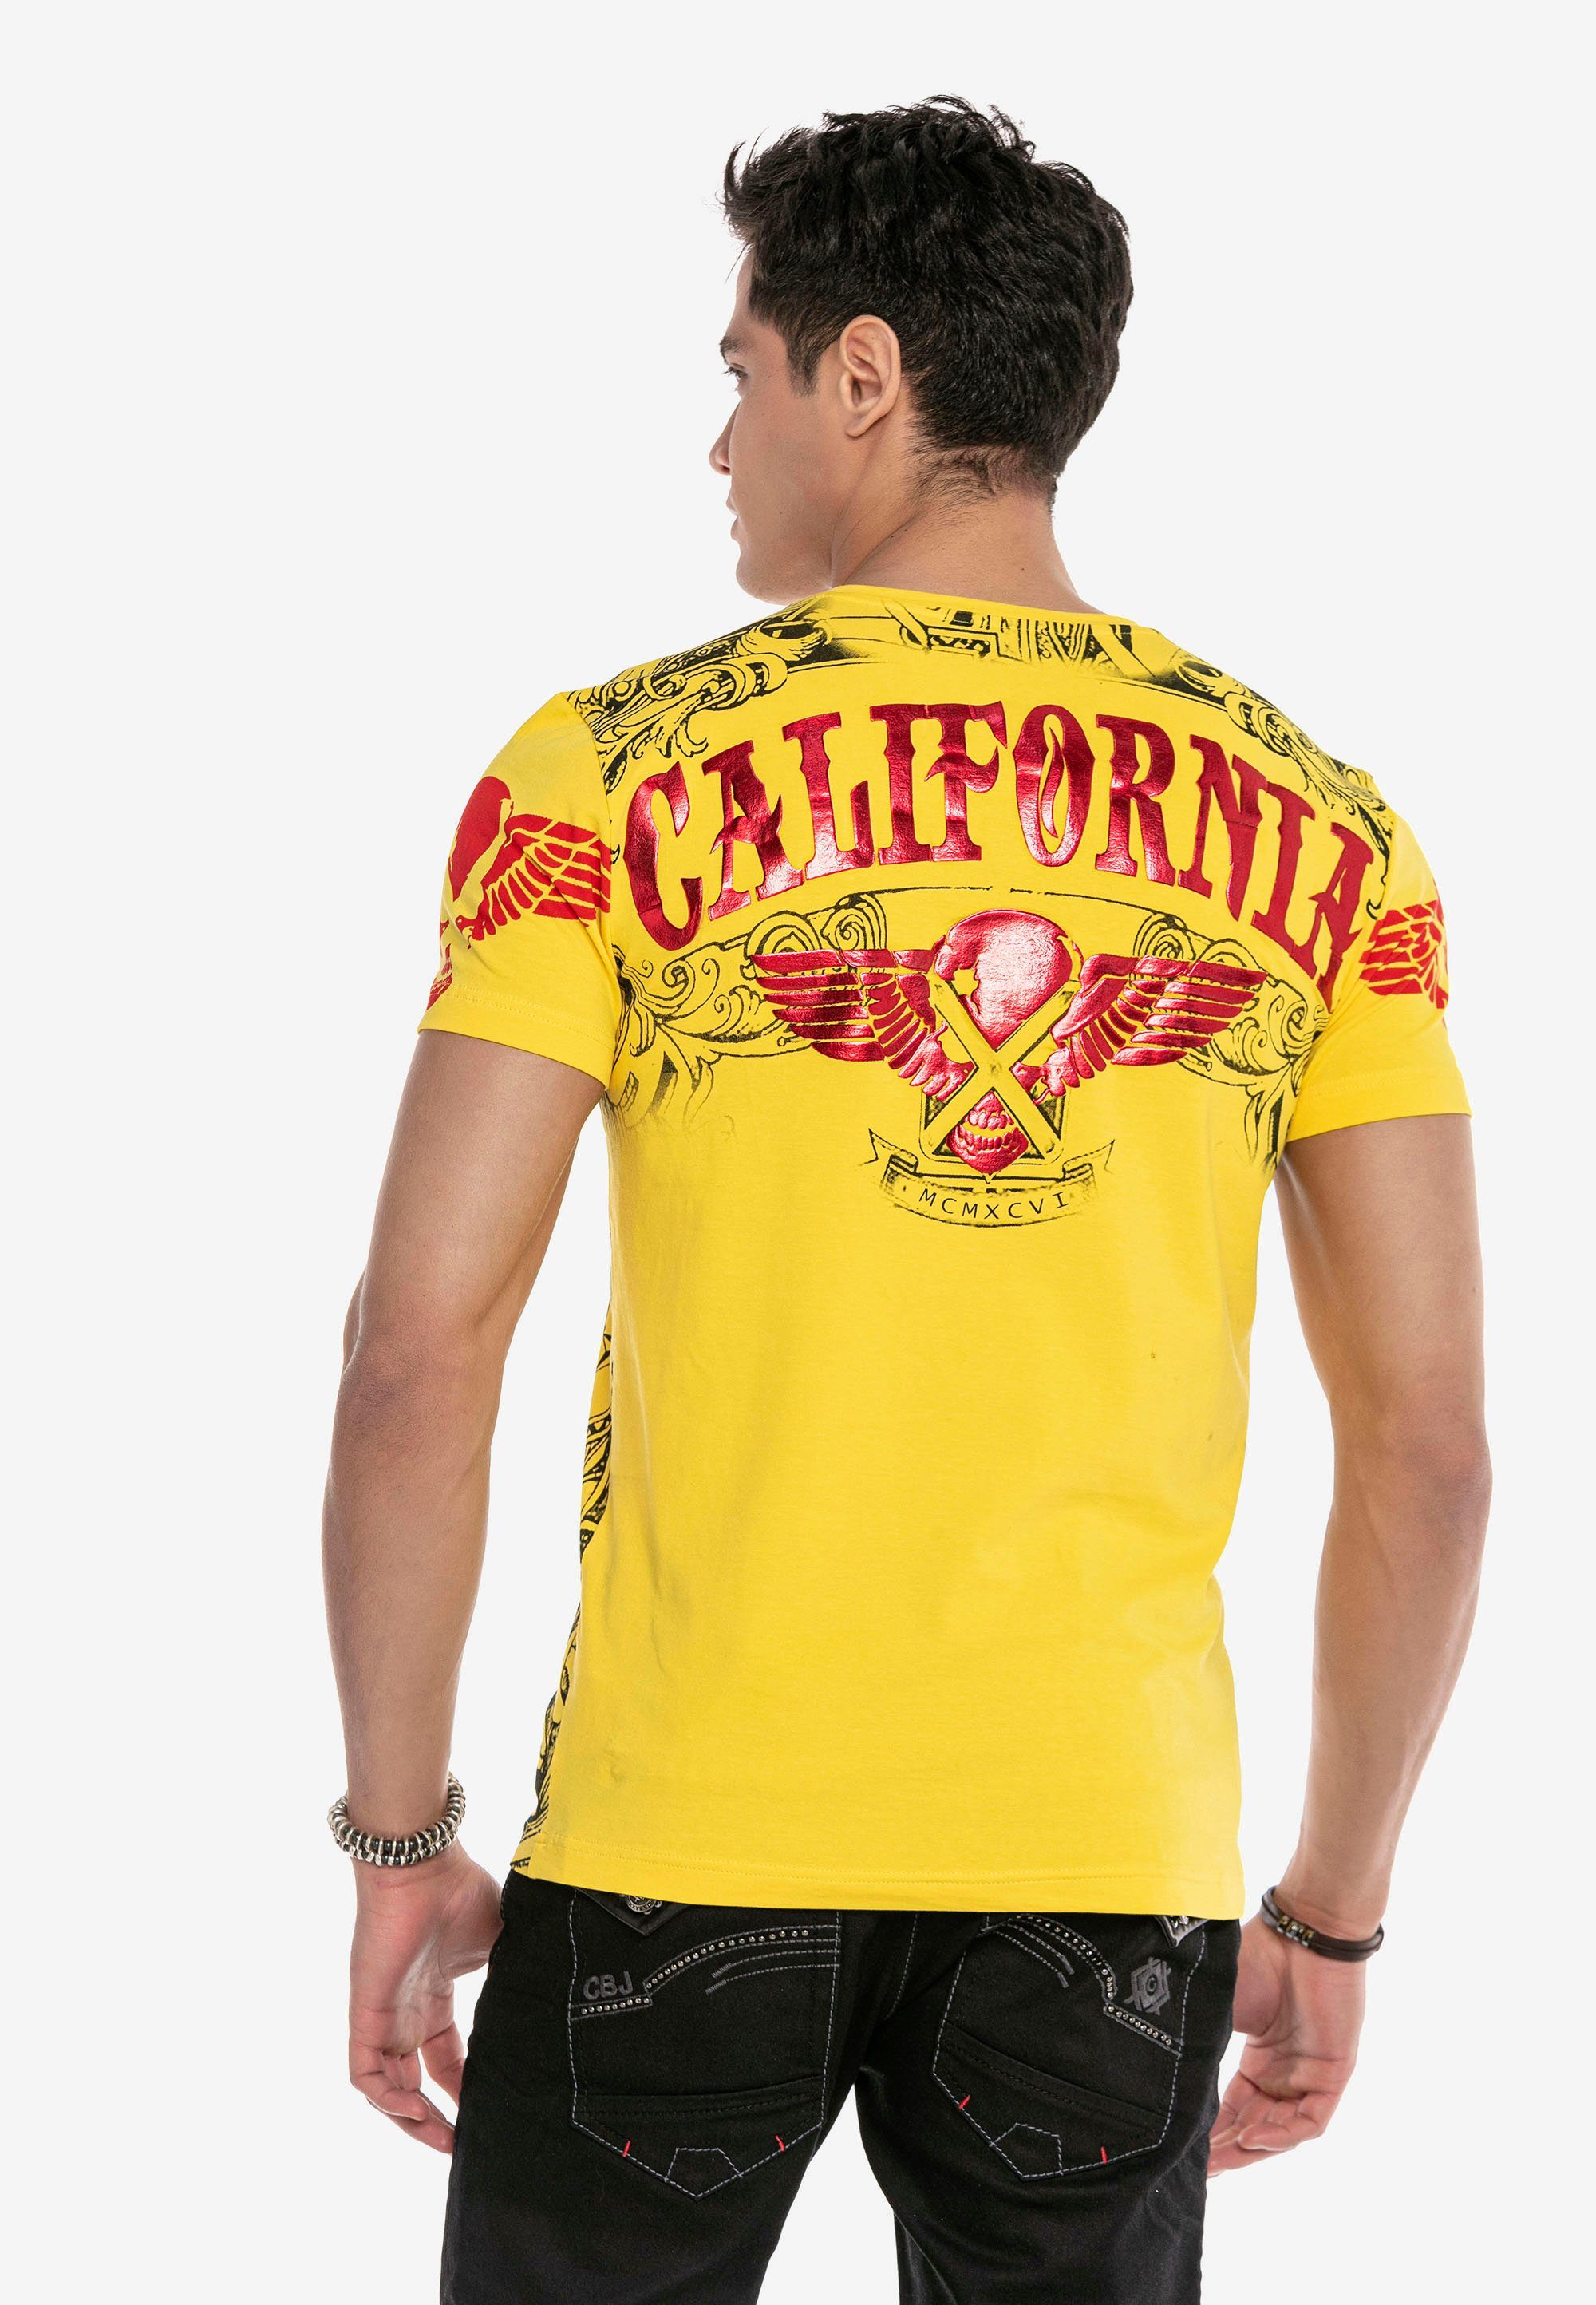 Baxx stylischem T-Shirt & gelb-rot CT656 Markenprint Cipo mit